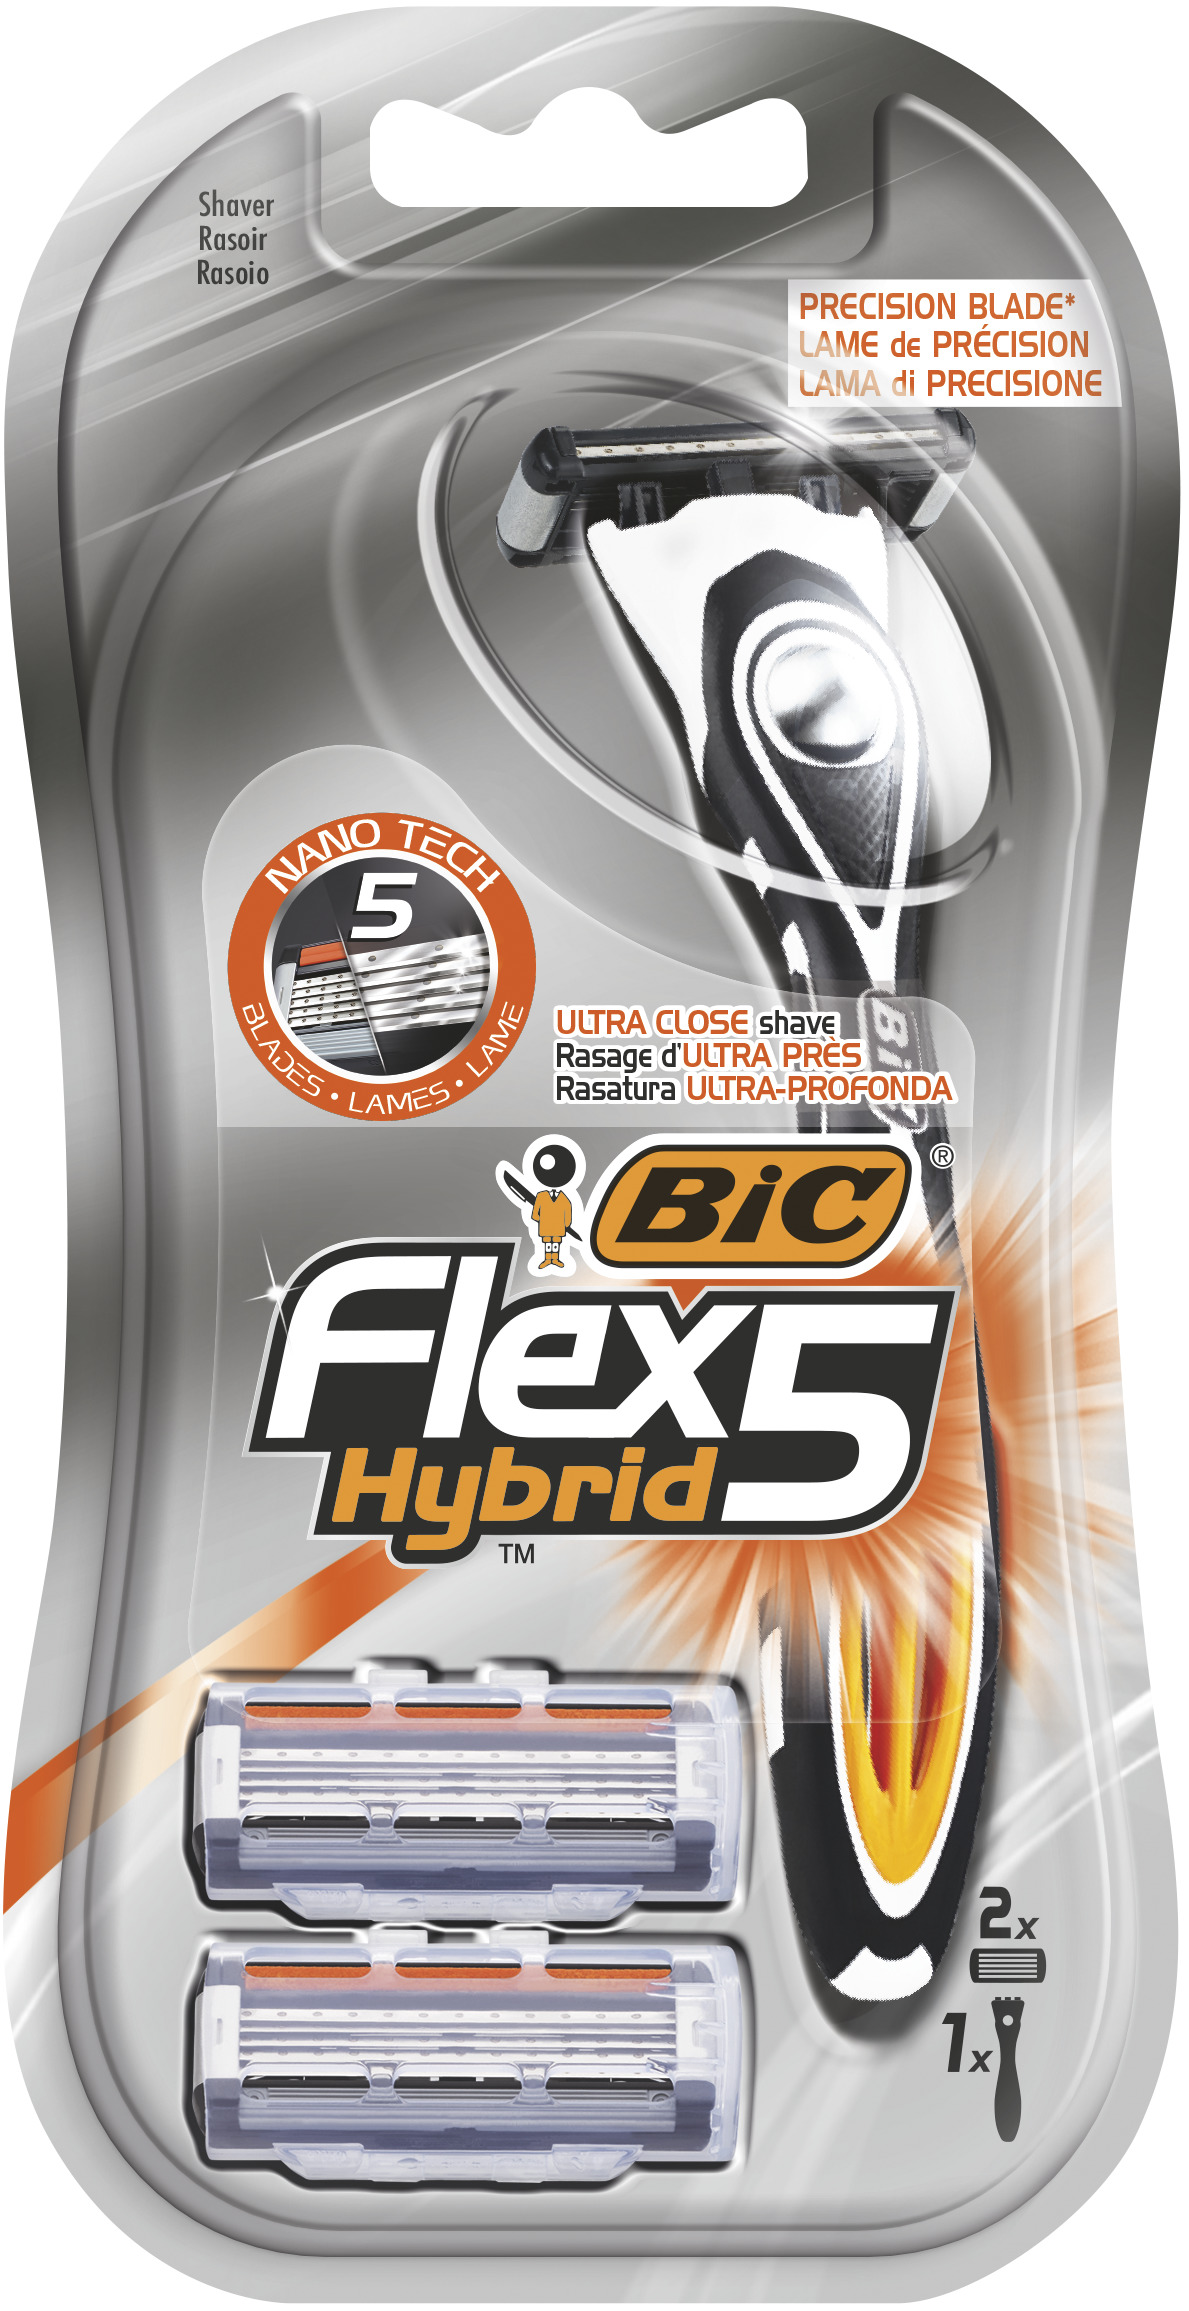 Станок для бритья BIC Flex 5 Hybrid + 2 кассеты станок д бритья жиллетт венус 1 кассета